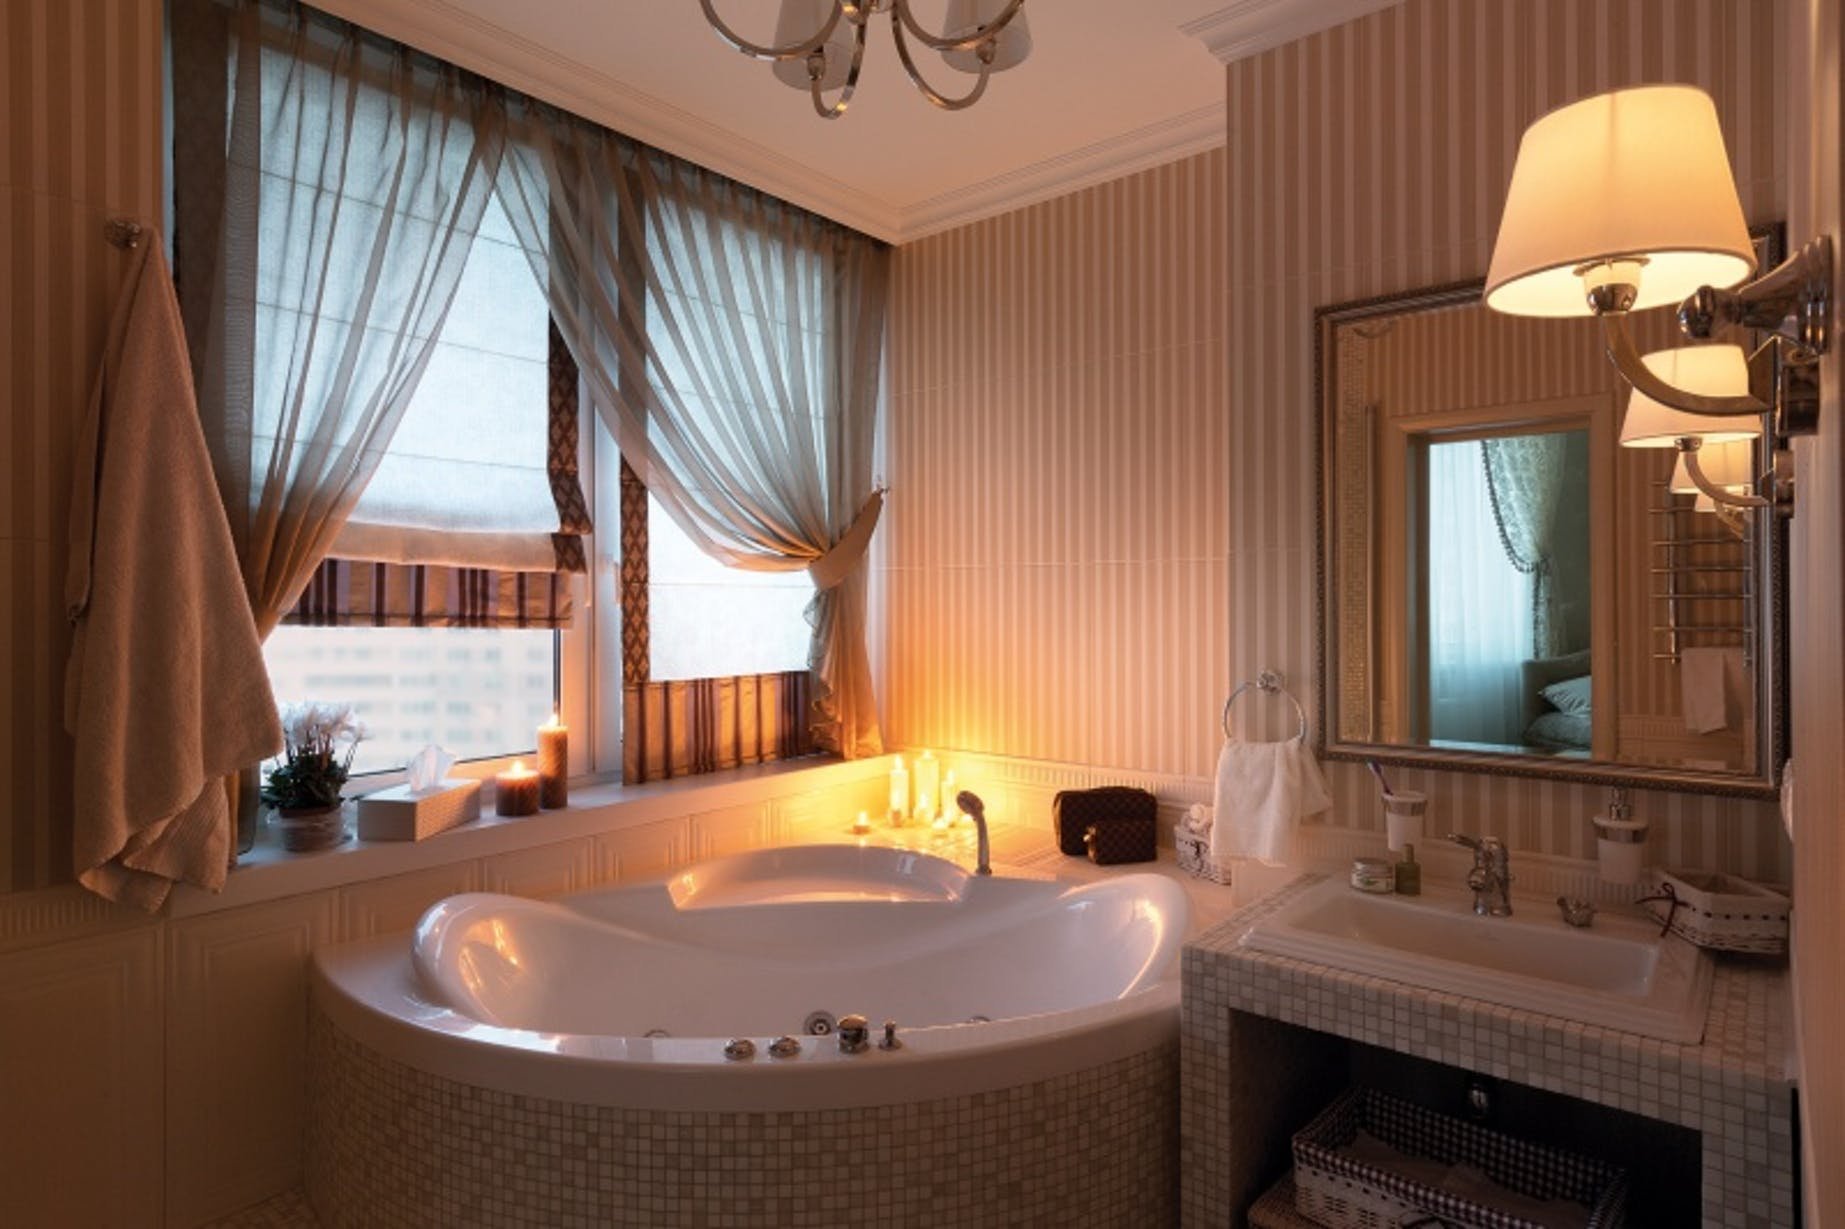 Ванная комната с окном: дизайн в частном доме с фото, варианты планировки